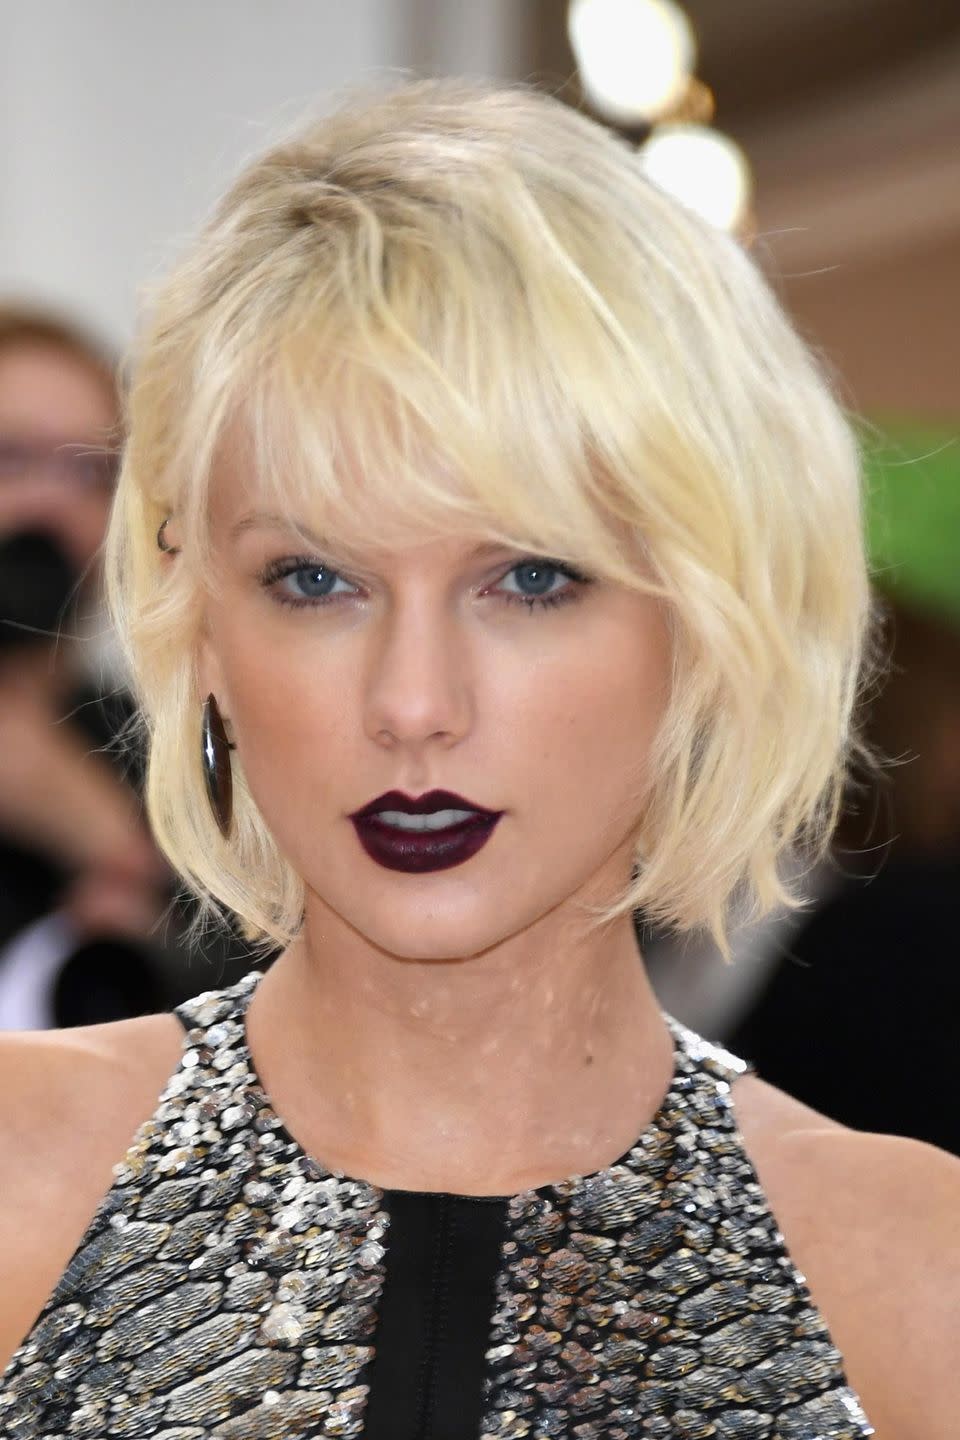 <p>Aquella época en la que <a href="https://www.elle.com/es/star-style/el-estilo-de/news/g369465/estilo-de-taylor-swift/" rel="nofollow noopener" target="_blank" data-ylk="slk:Taylor Swift" class="link ">Taylor Swift</a> se volvió grunge nos dejó su look para inspirarte si quieres llevar tu <strong>bob con flequillo, capeado y en rubio helado</strong>. <br></p>